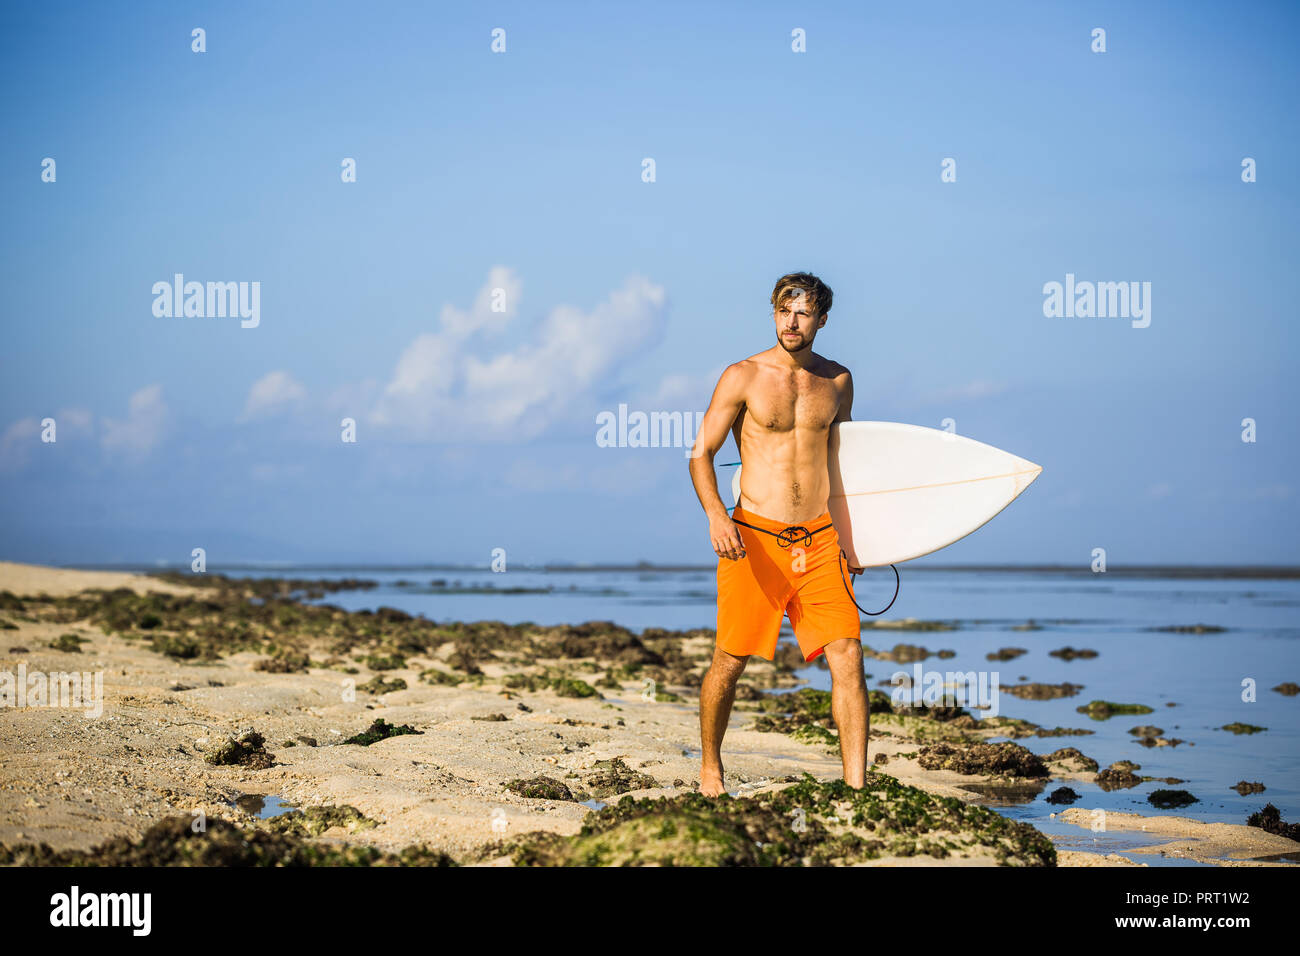 Athletischen Sportler mit Surfen board weg schauen beim Spaziergang am Sandstrand Stockfoto